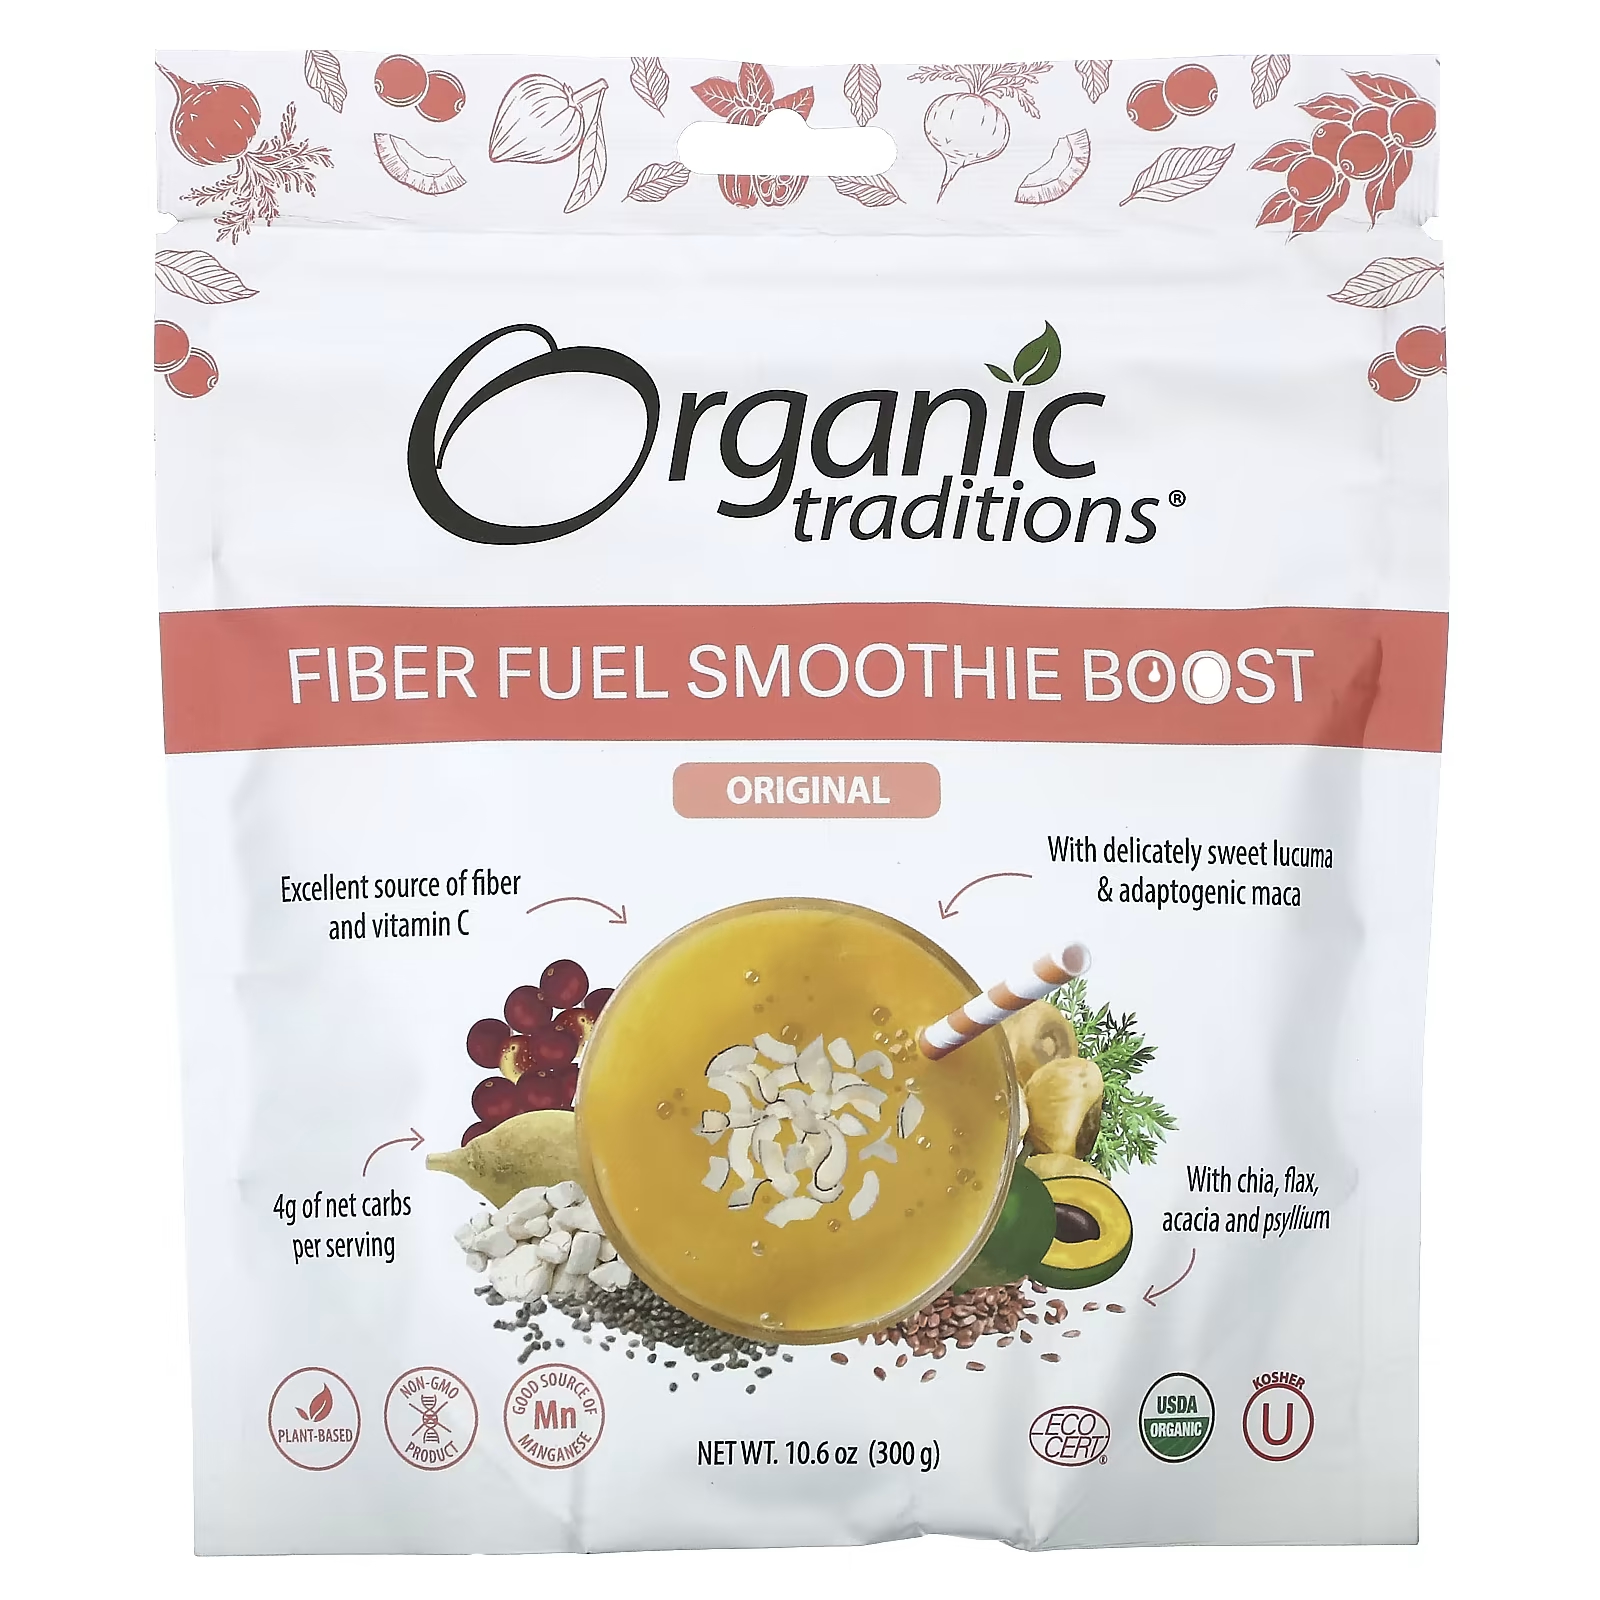 Пищевая добавка Organic Traditions Fiber Fuel Smoothie Boost Original, 300 г organic traditions fiber fuel smoothie boost ягодный 300 г 10 6 унции